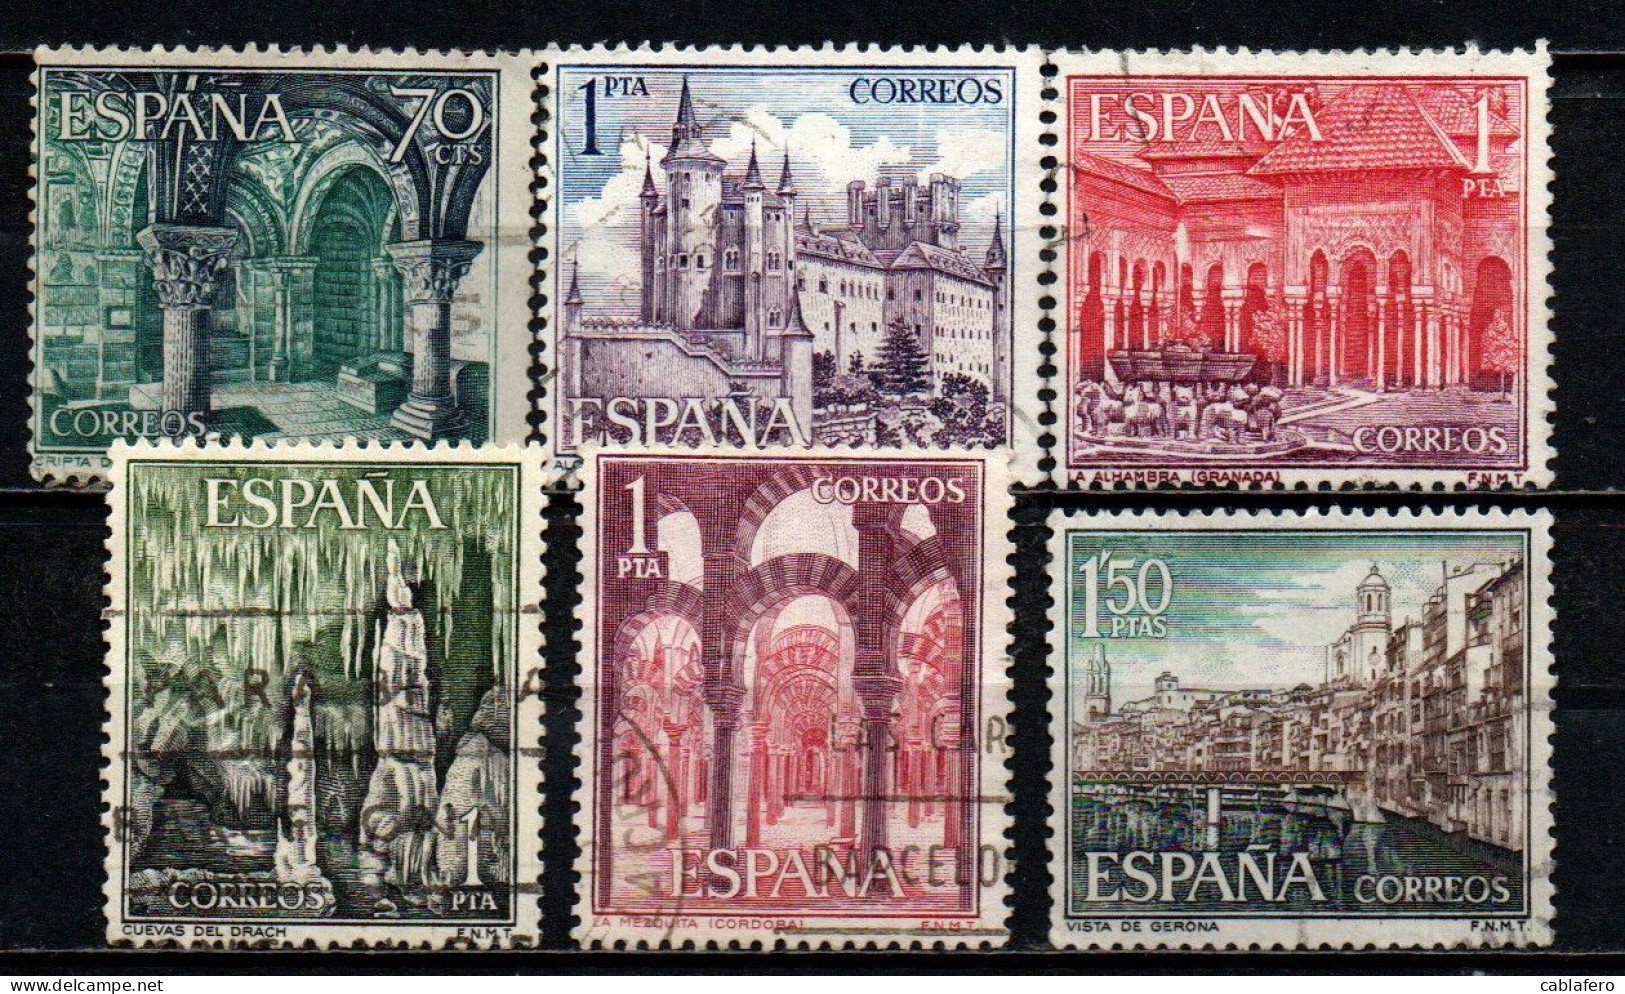 SPAGNA - 1964 - IL TURISMO IN SPAGNA: LEON - SEGOVIA - GRANADA - CORDOVA - GERONA - USATI - Usati